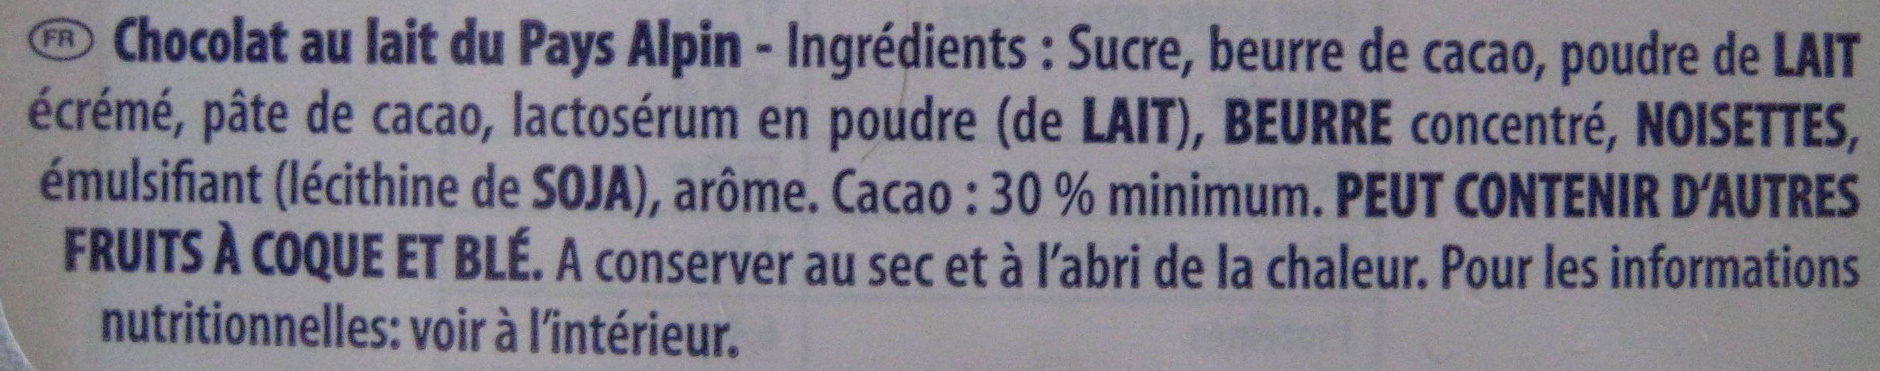 Lapin en chocolat au lait alpin - Ingrédients